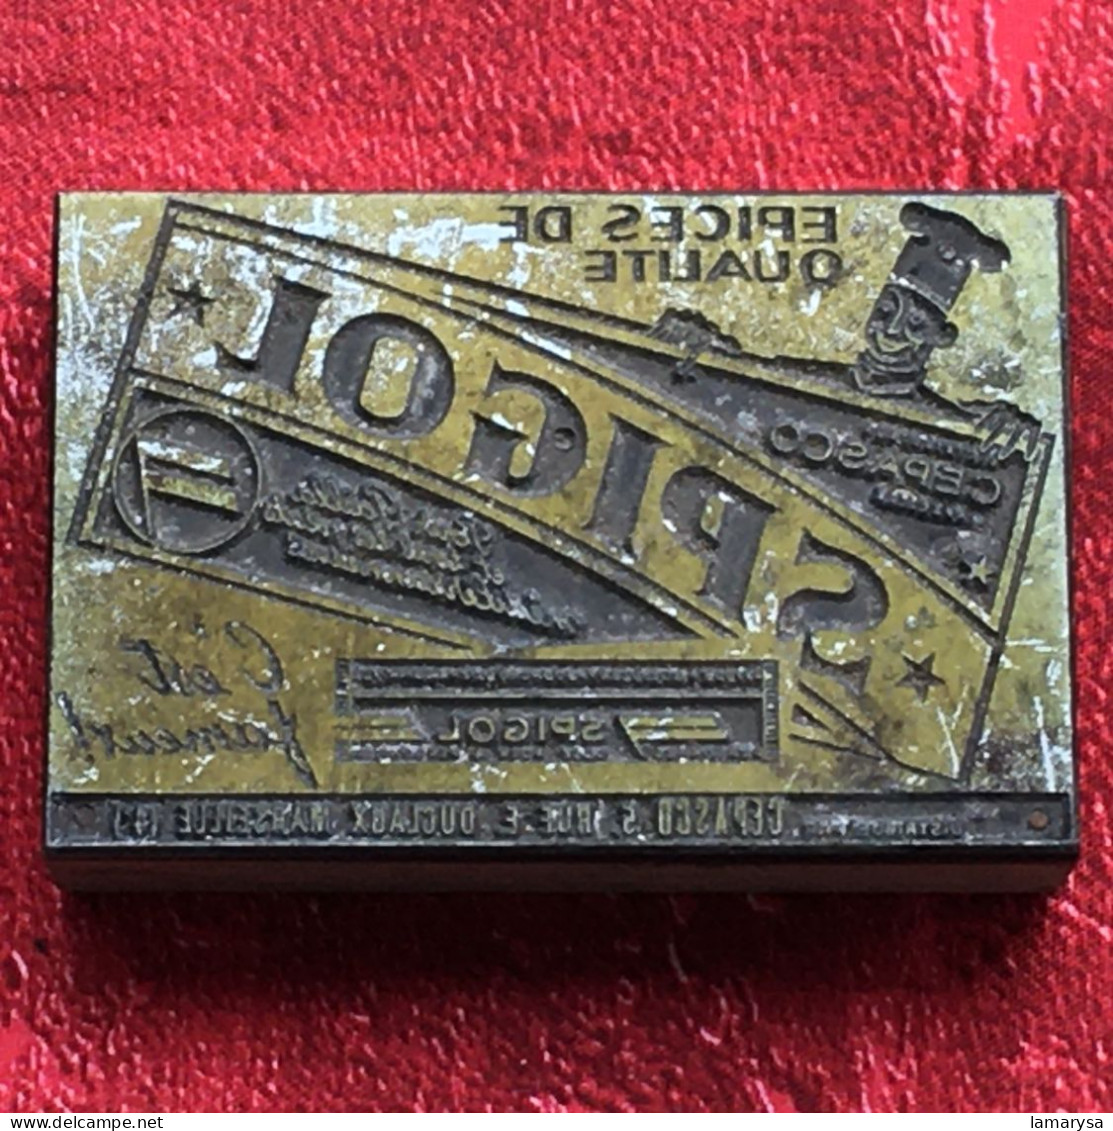 Spigol épices Safran-Plaque d'Imprimerie Vintage-Publicité-Tampon publicitaire-Marseille-pr étiquète scrapbooking-déco